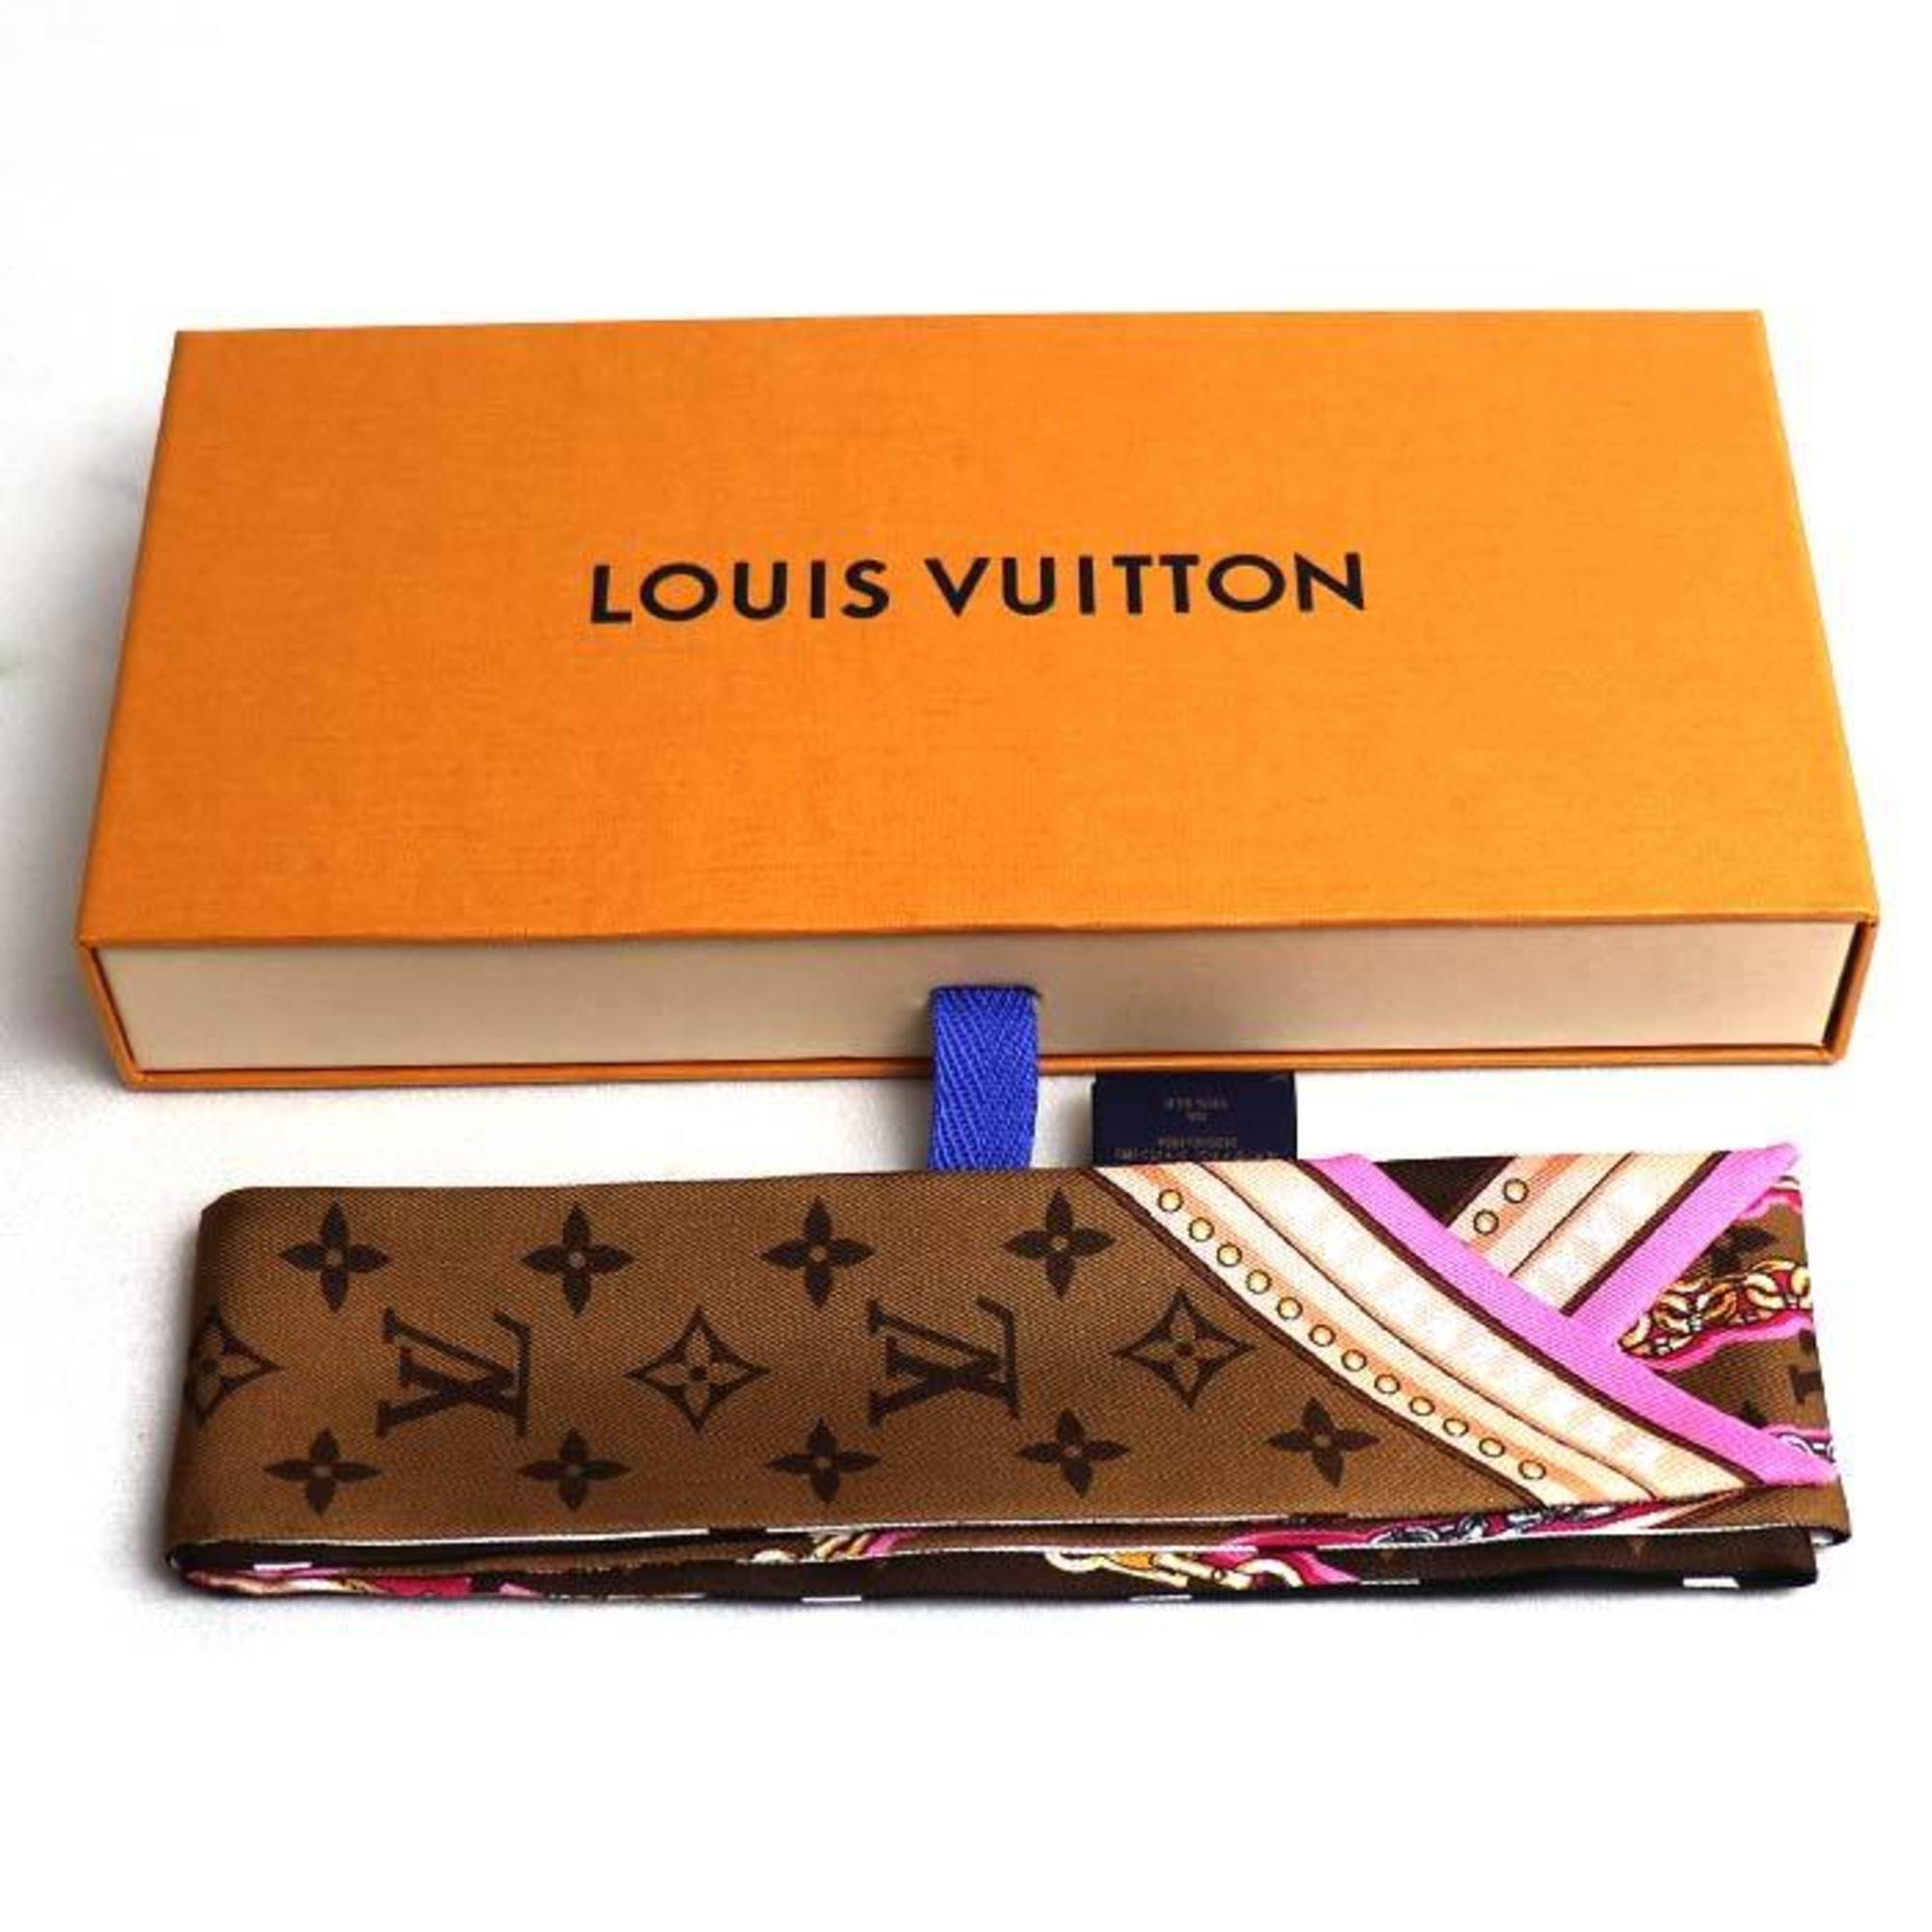 LOUIS VUITTON Louis Vuitton Bandeau BB Ultimate Scarf Muffler Multicolor Noir M76676 Women's